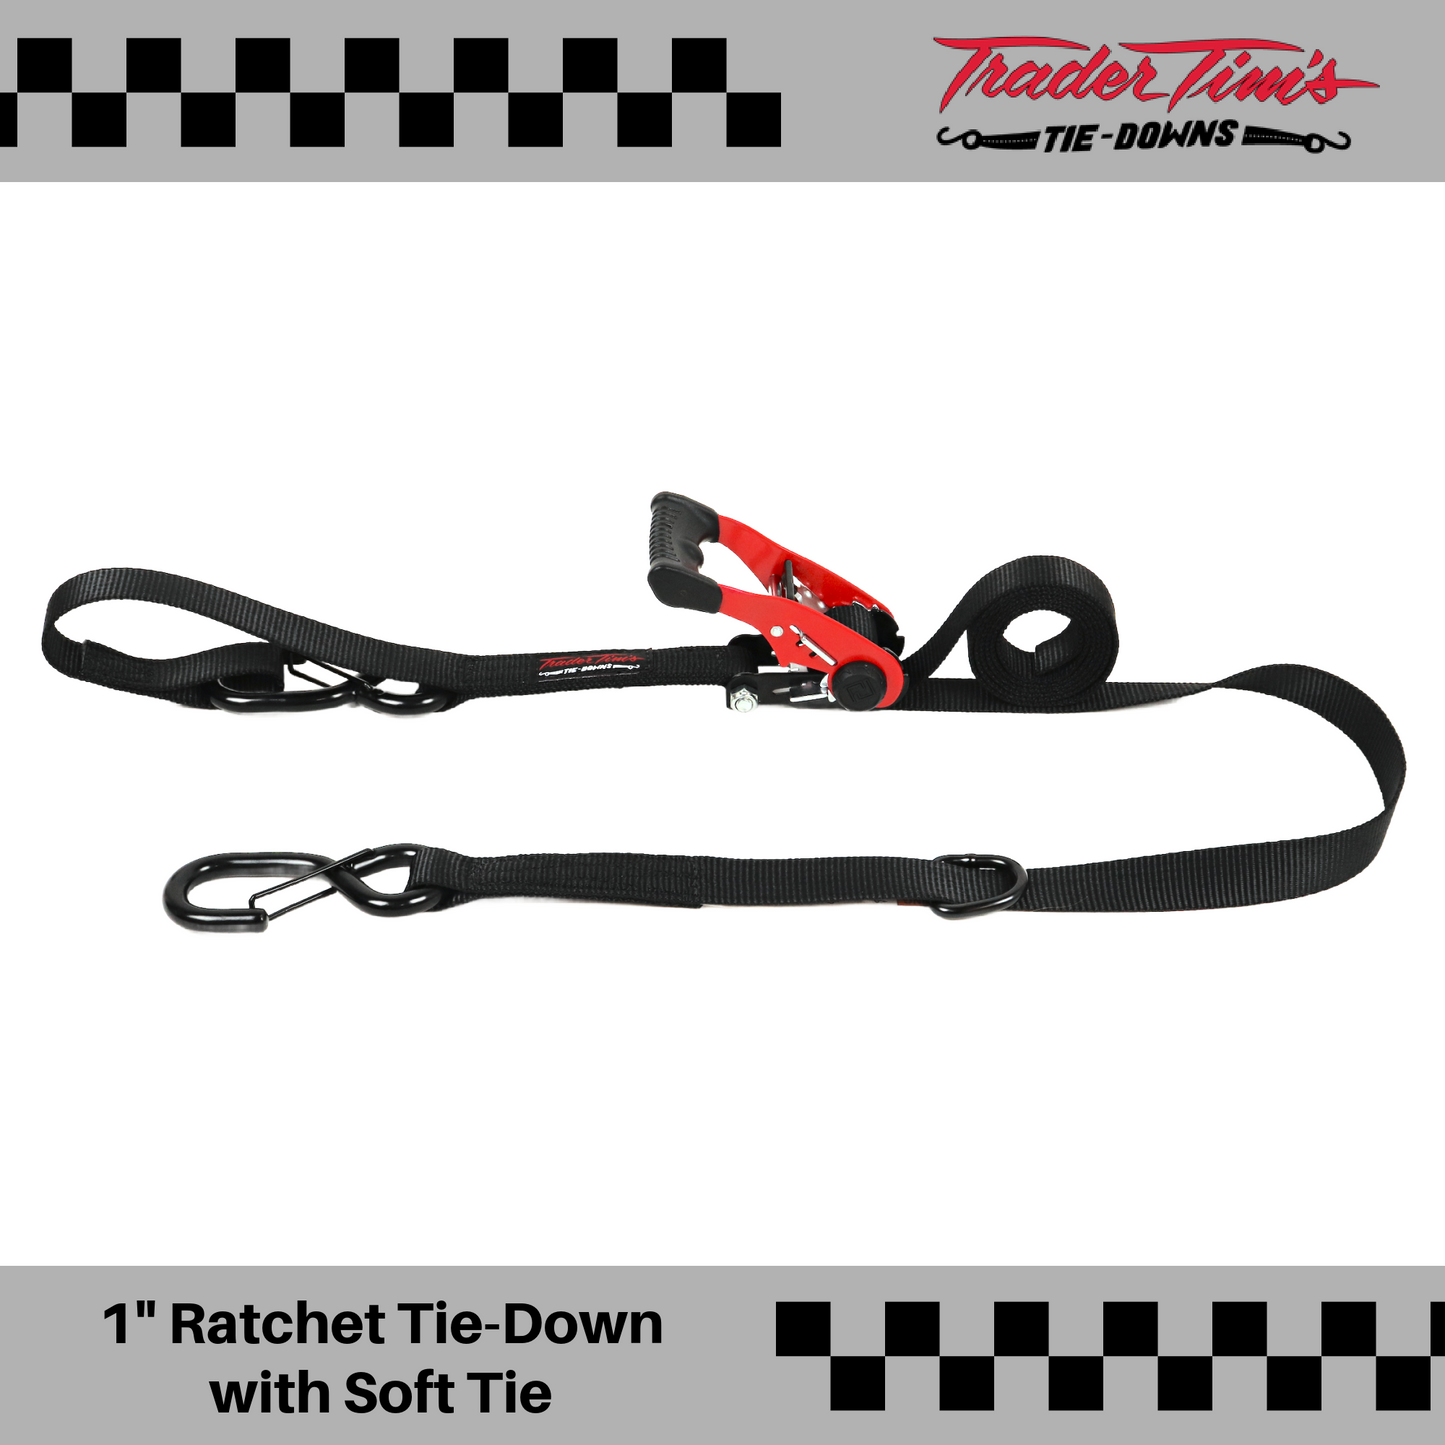 9 Piece 1" x 8' Ratchet Tie-Down with Soft Tie Kit